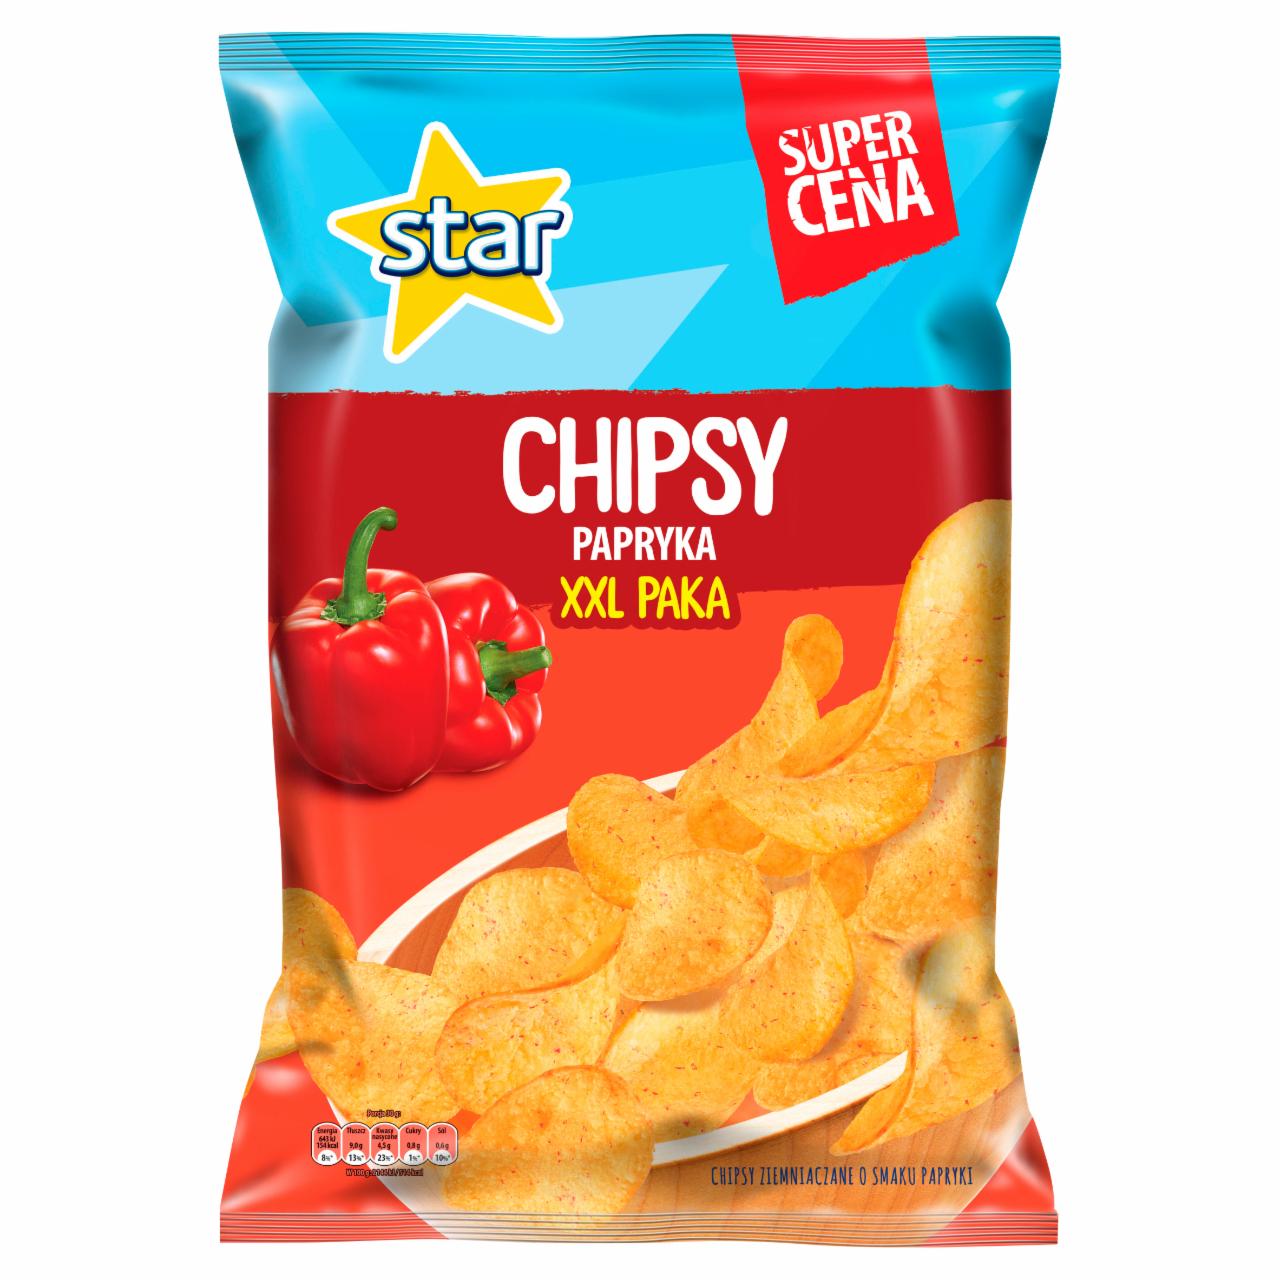 Zdjęcia - Star Chipsy papryka 250 g